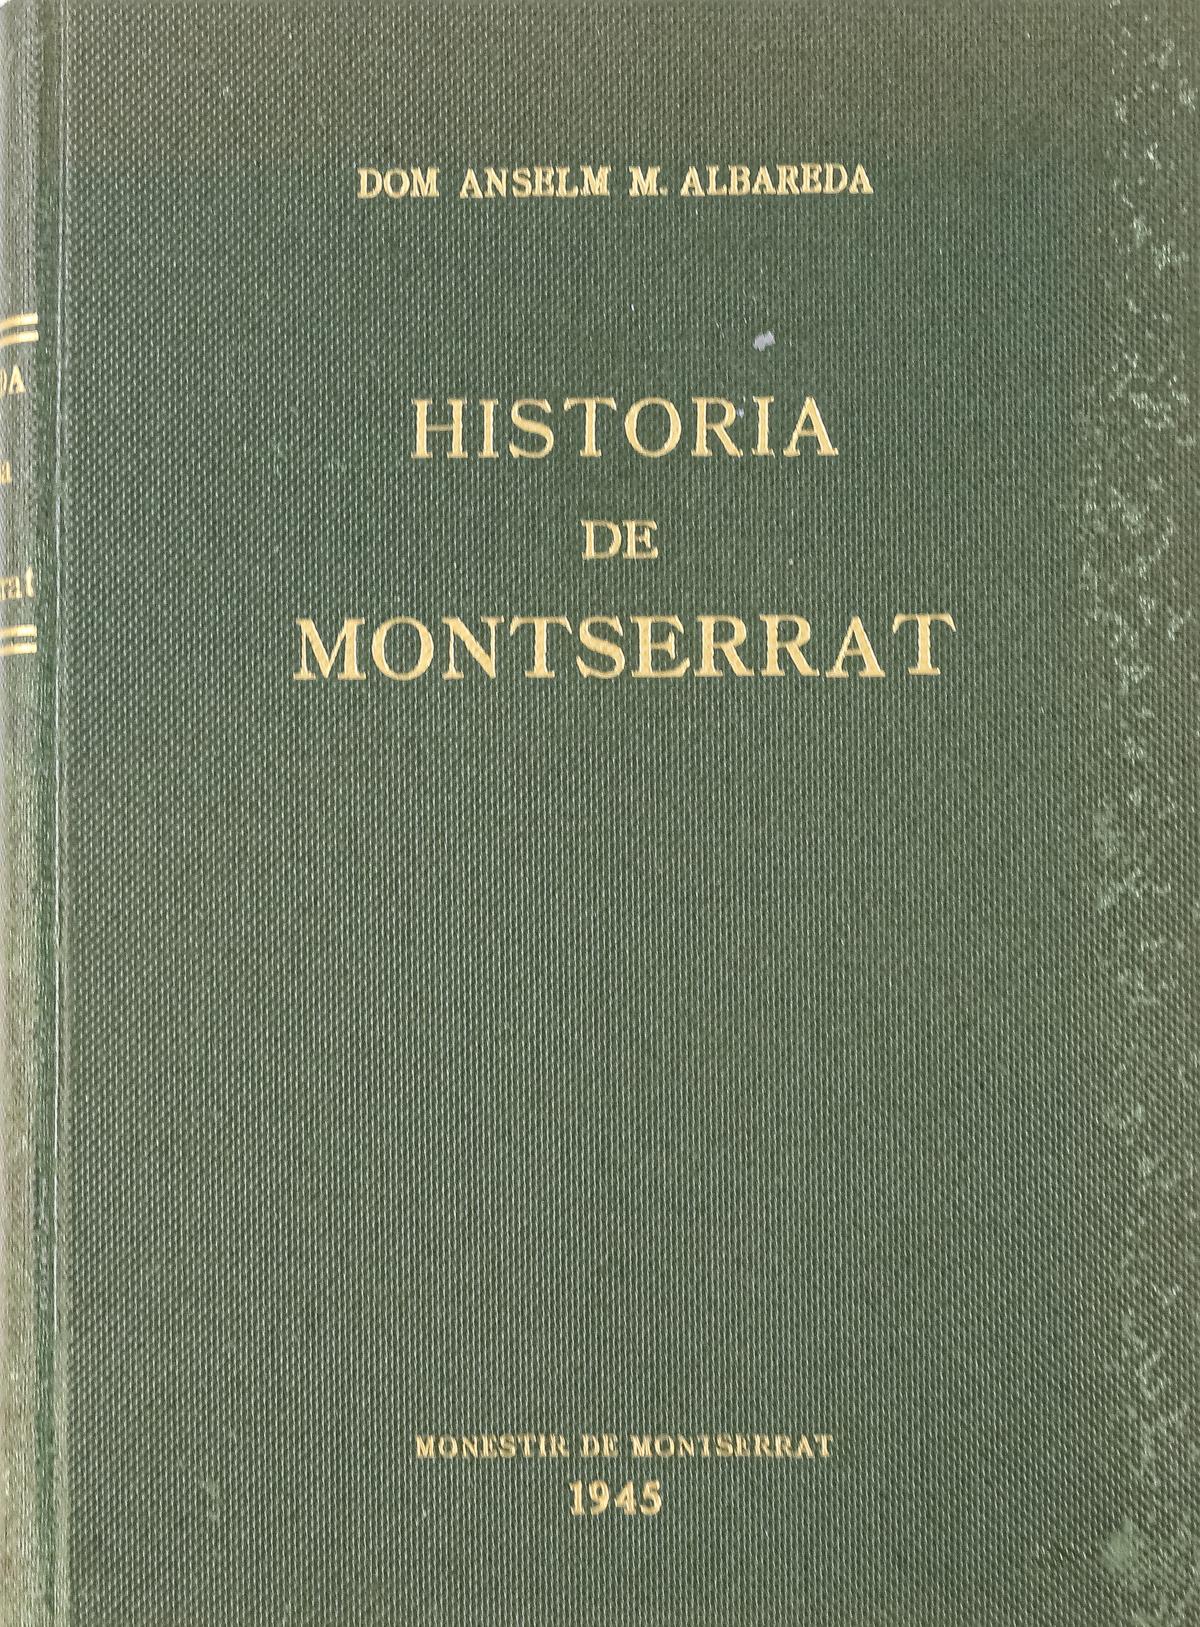 "HISTÓRIA DE MONTSERRAT"